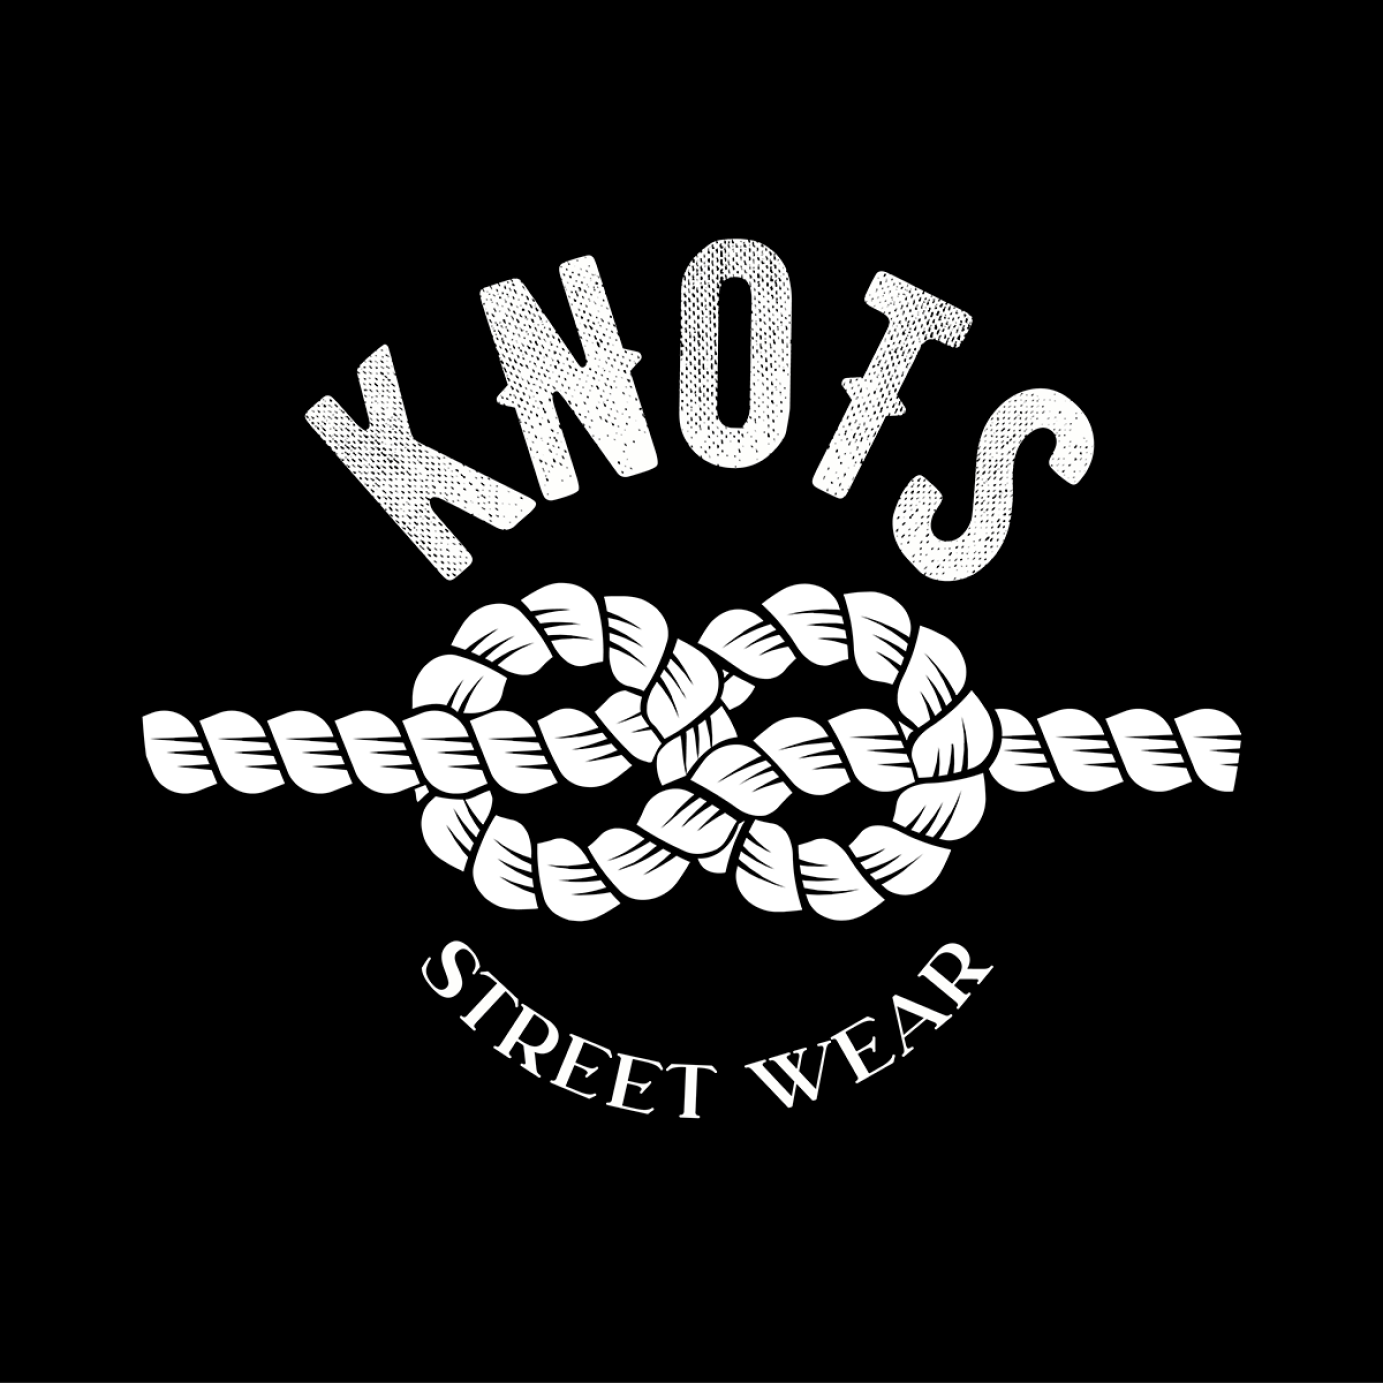 Knots Street Wear